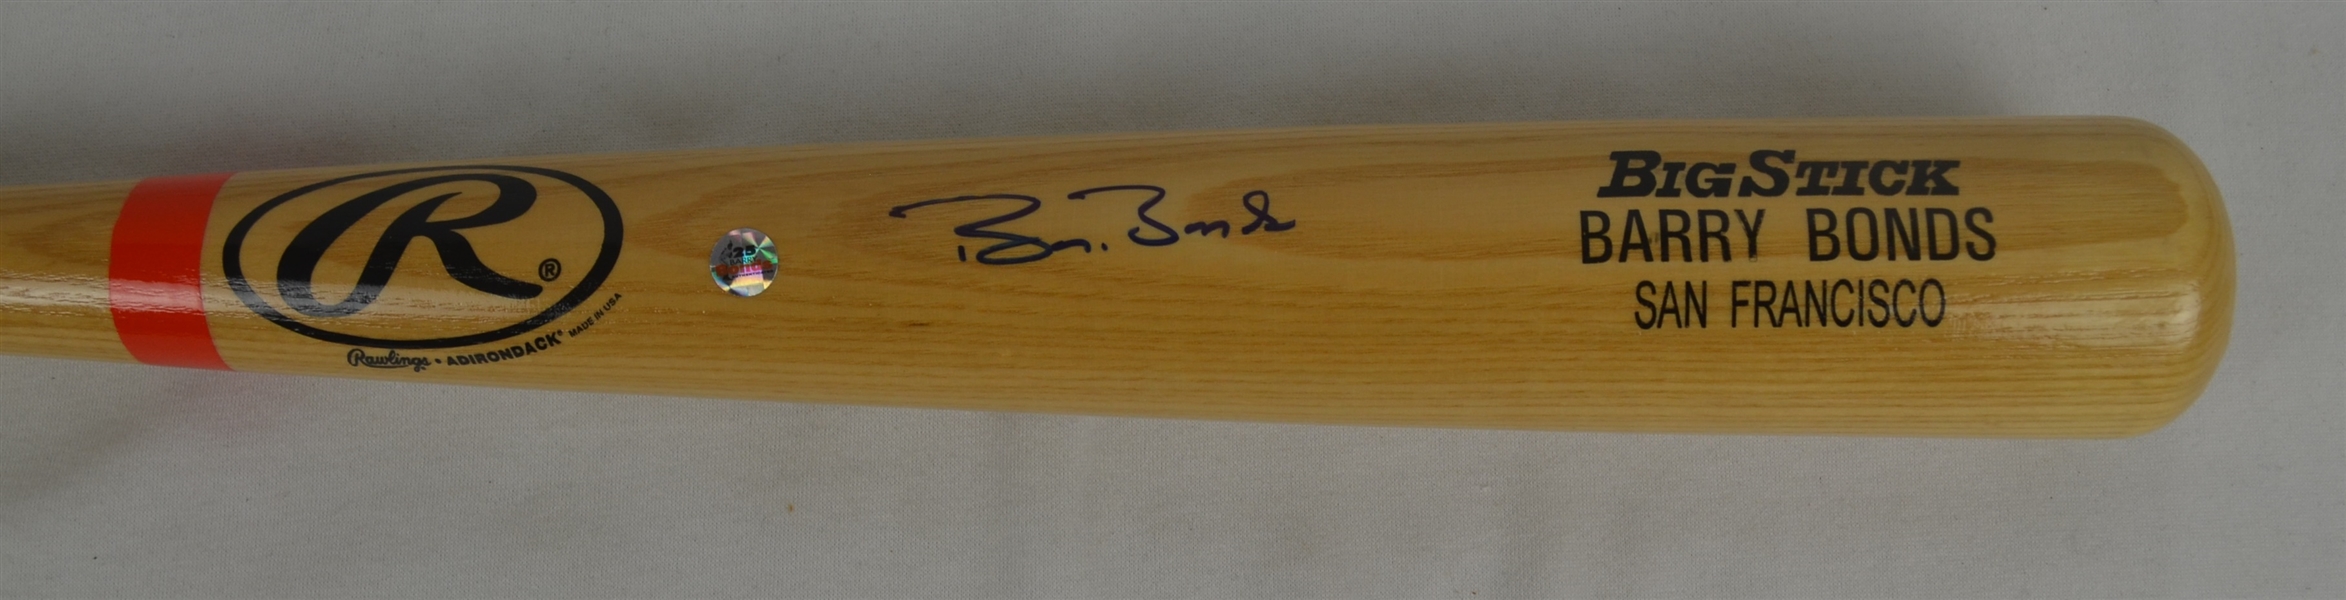 Barry Bonds San Francisco Giants Autographed Bat